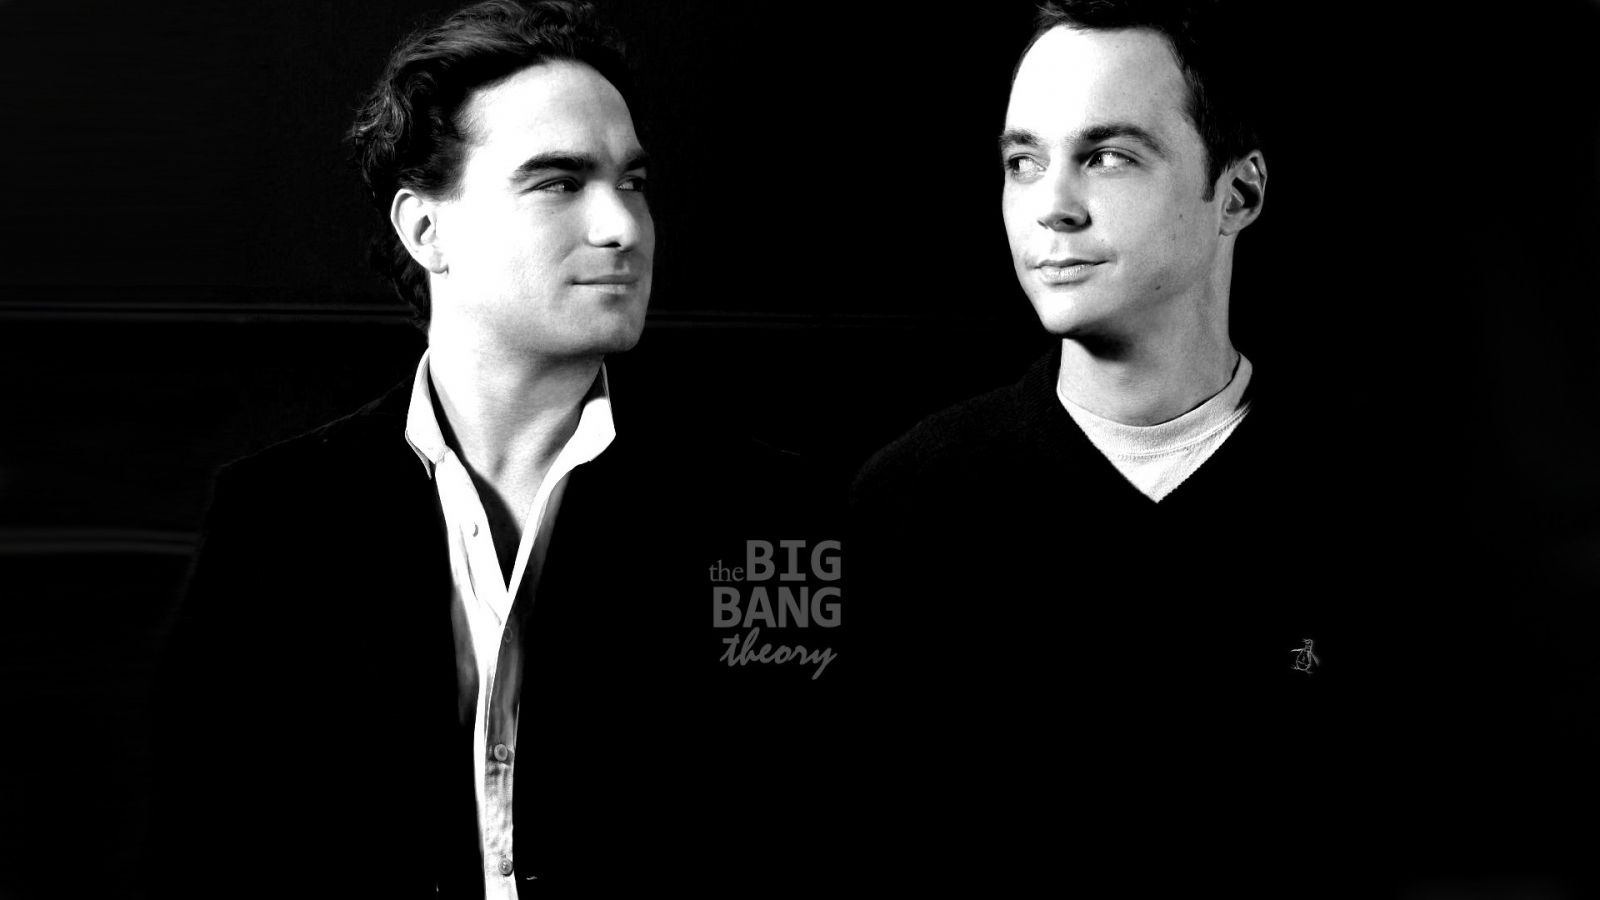 The Big Bang Theory Leonard and Sheldon for 1600 x 900 HDTV resolution